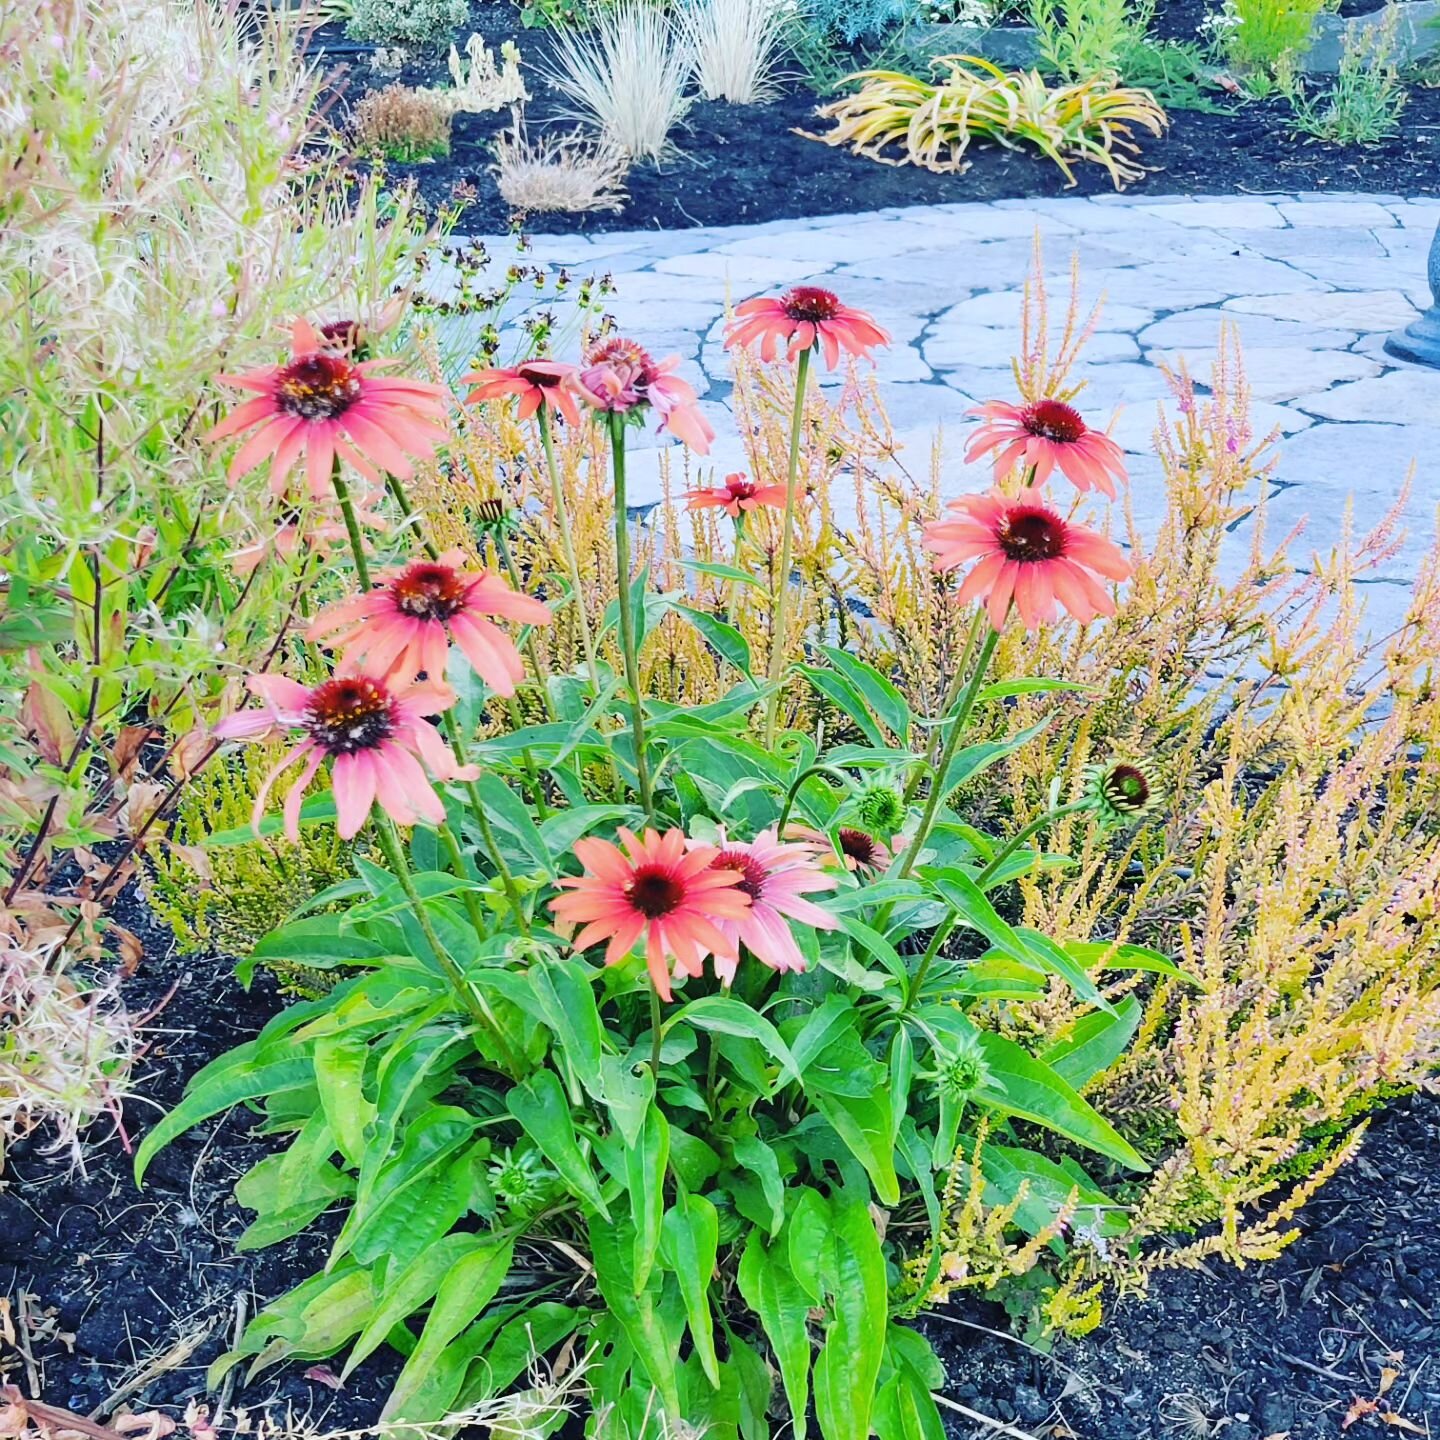 #Oregon #summertime #flowers #MotherNature #gardening #familytime